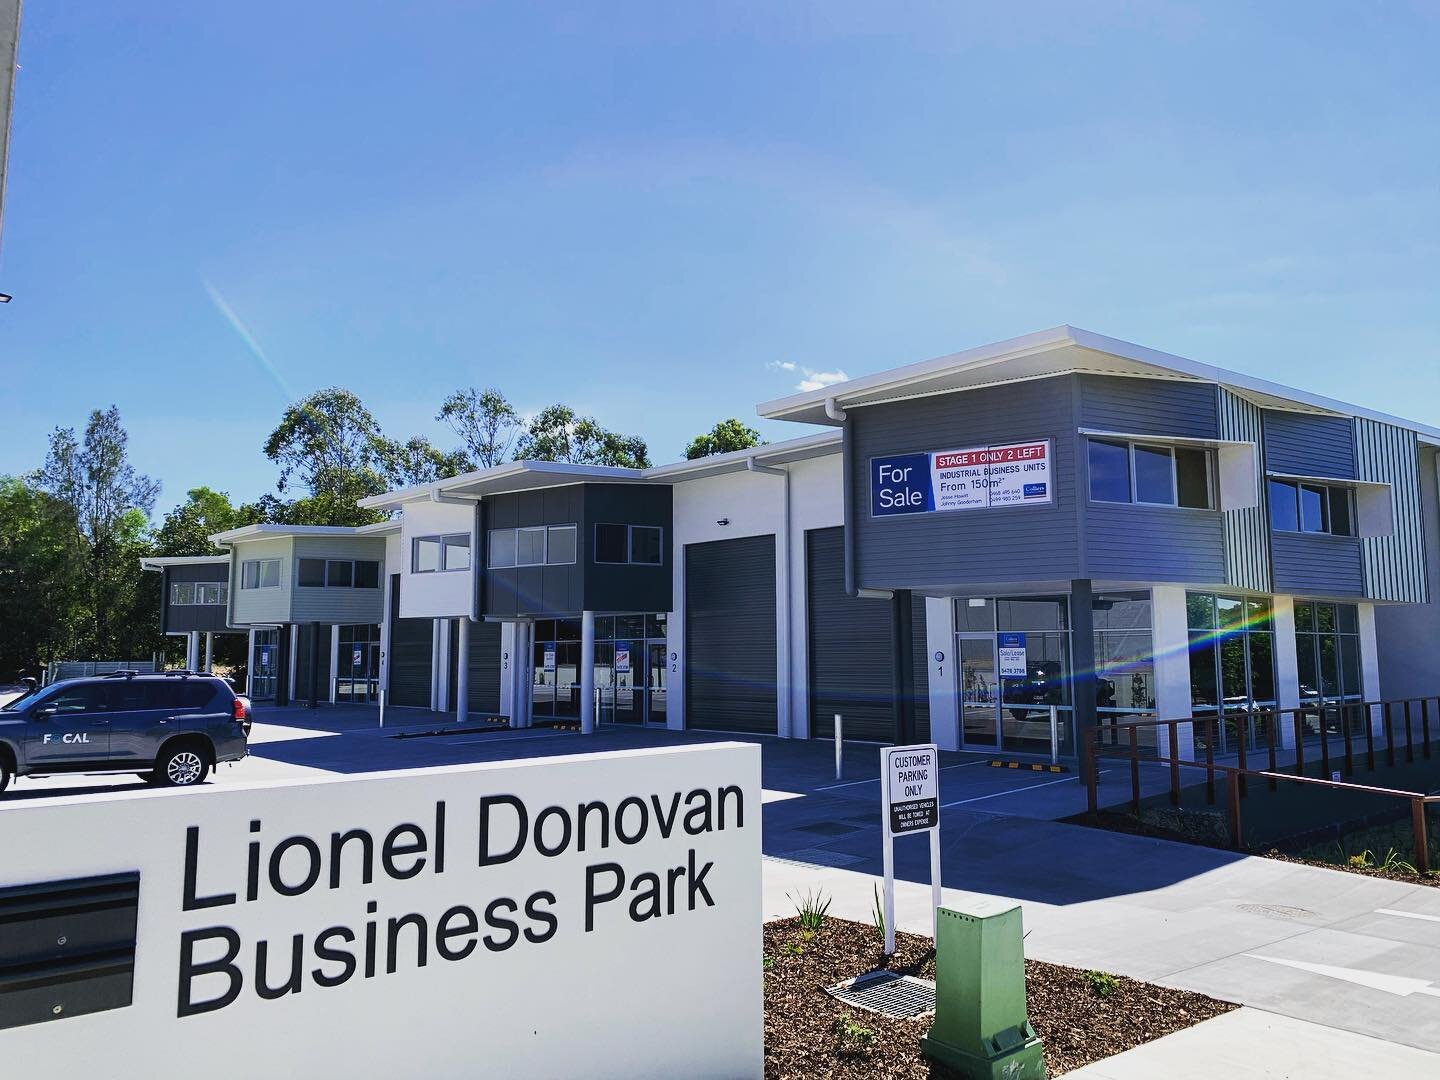 Lionel Donovan Business Park